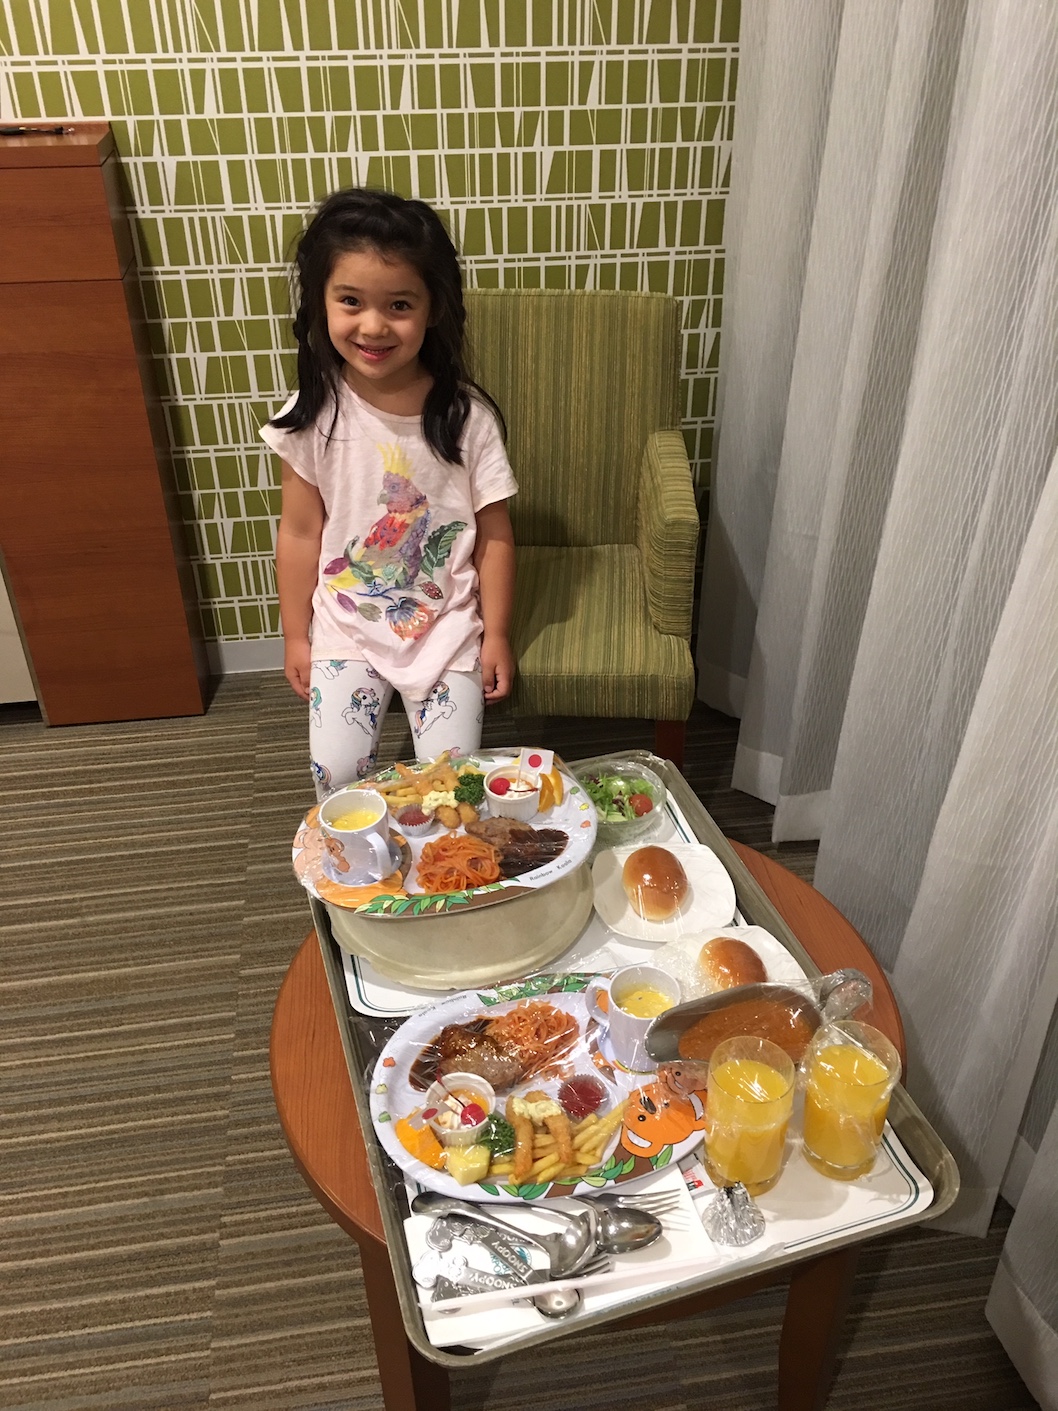 Narita Airport hotel kids meals